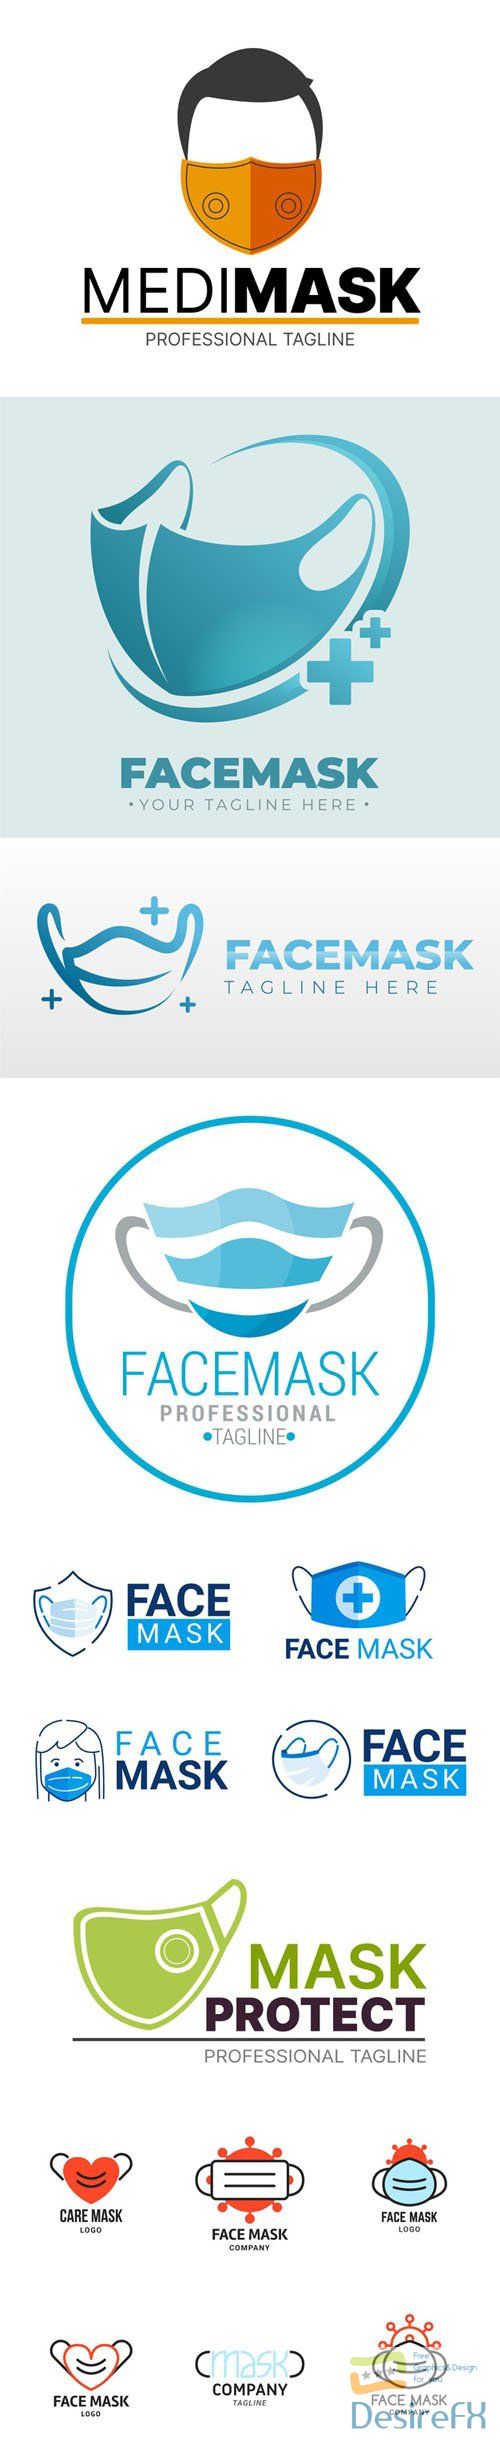 15 Face Mask Logos Templates in Vector